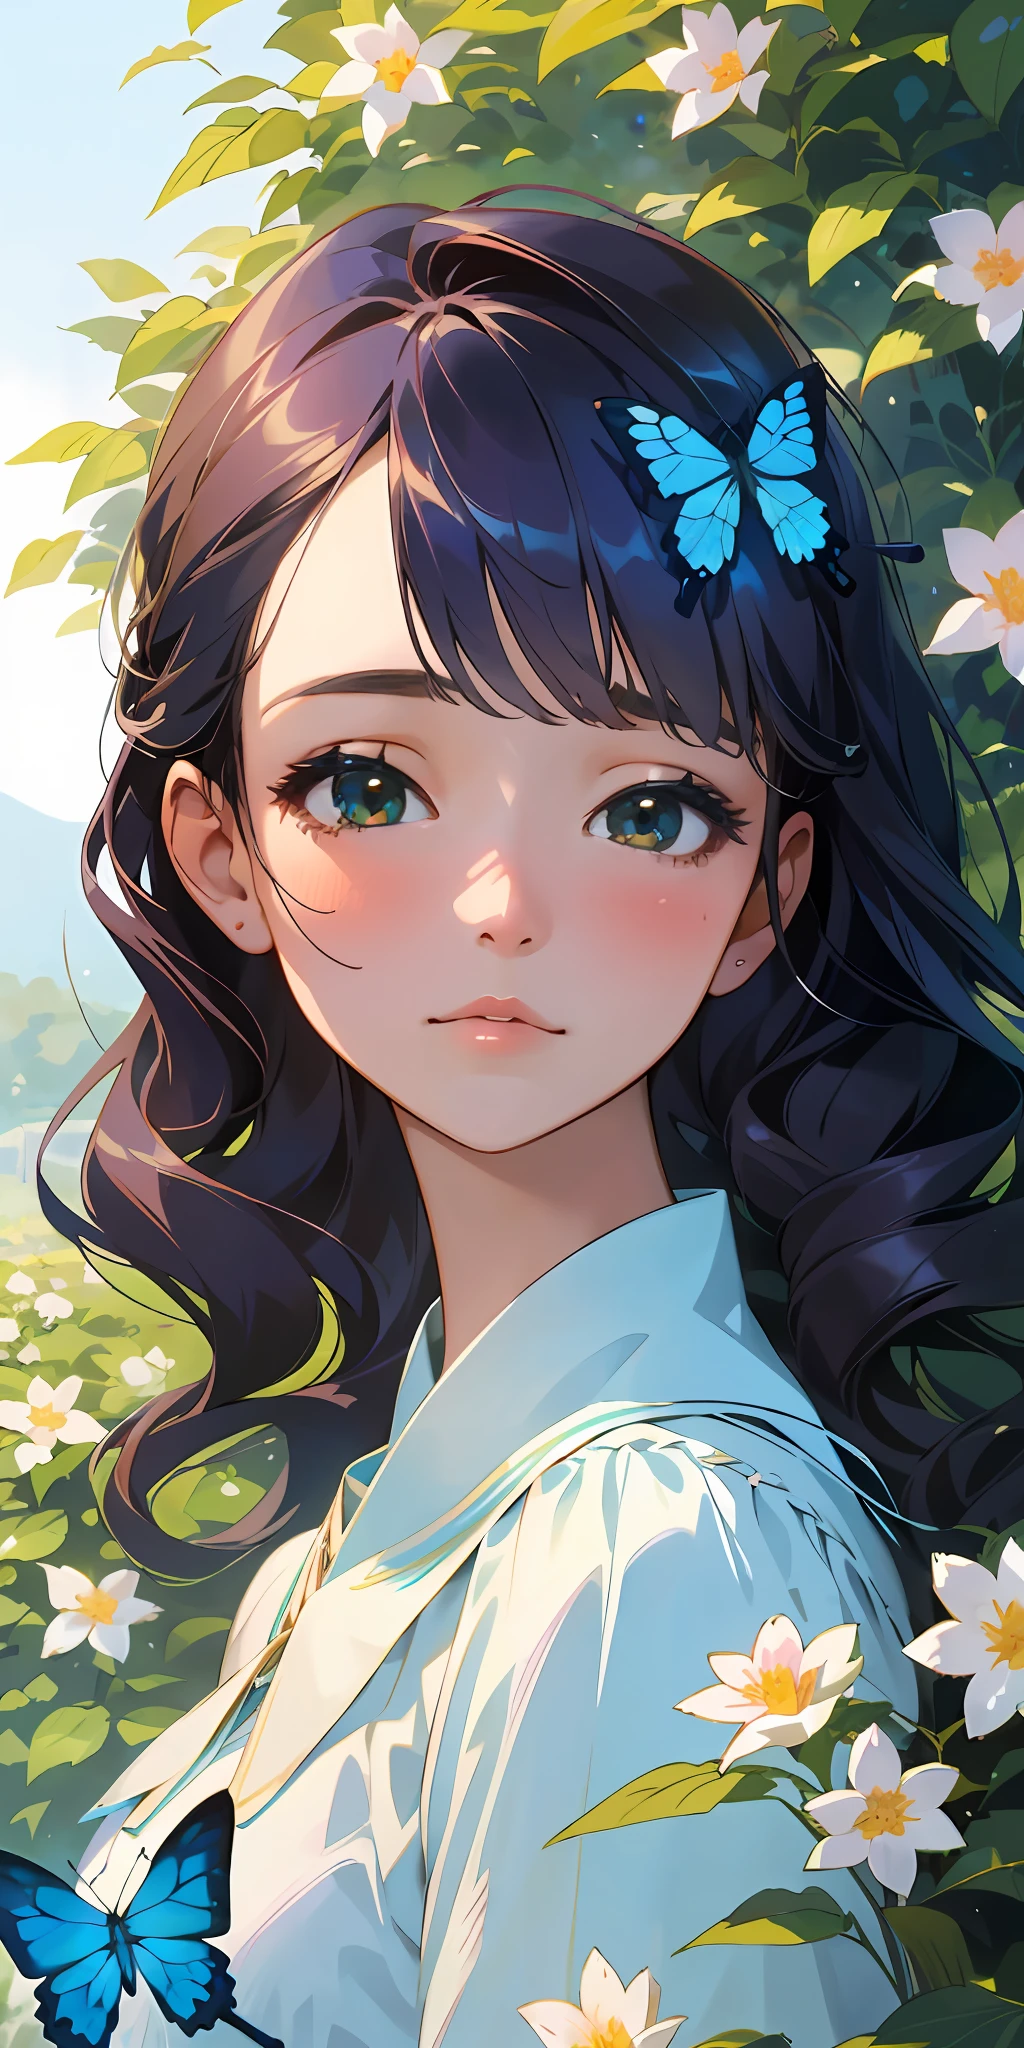 (顶级品质, 杰作, 超现实), 一位美丽而娇嫩的女孩的肖像，表情柔和而悲伤, 背景中的风景是一个花园，里面有开花的灌木丛和飞舞的蝴蝶，色调为蓝色.